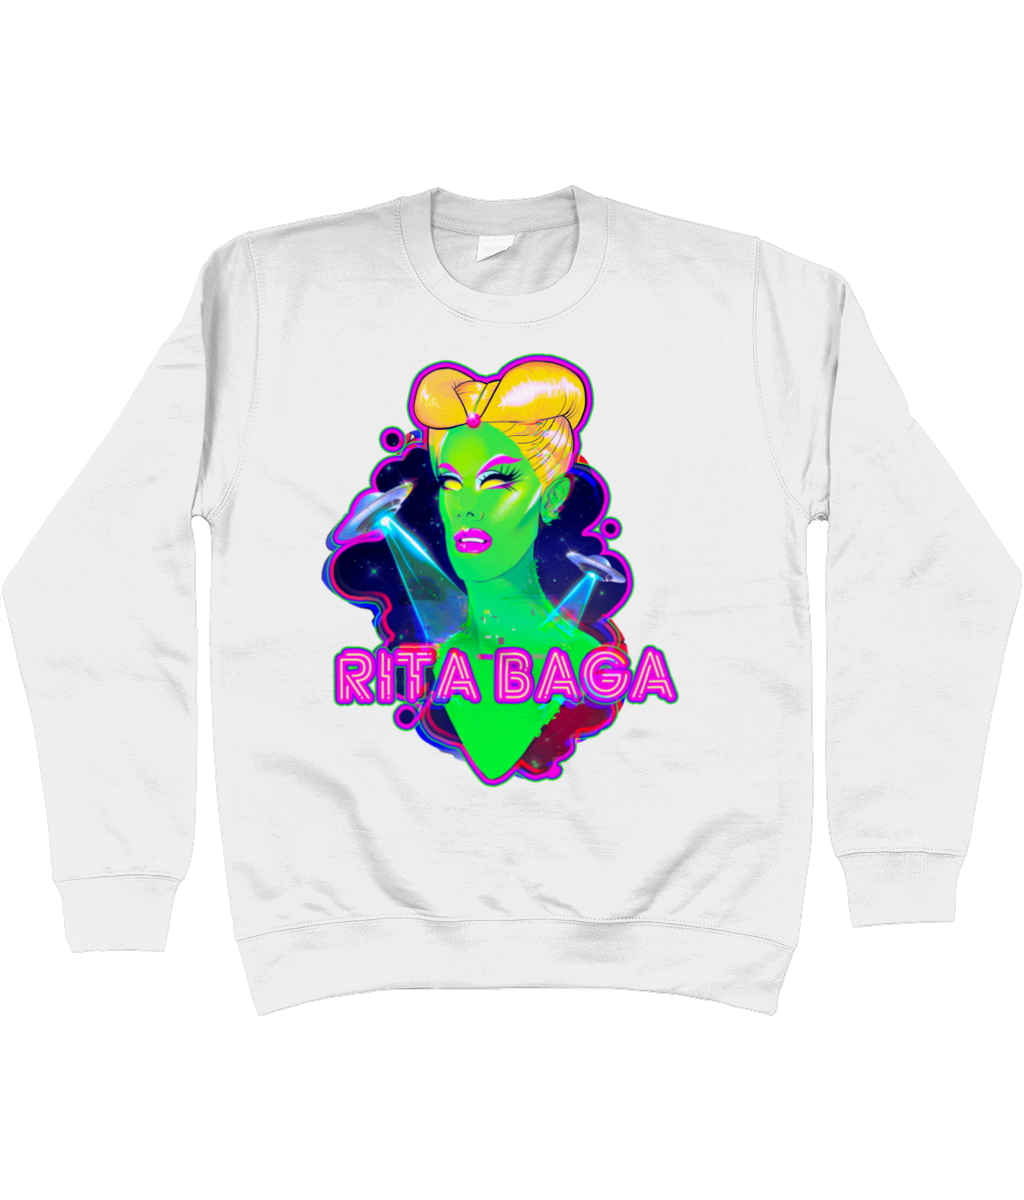 Rita Baga - Alien Sweatshirt